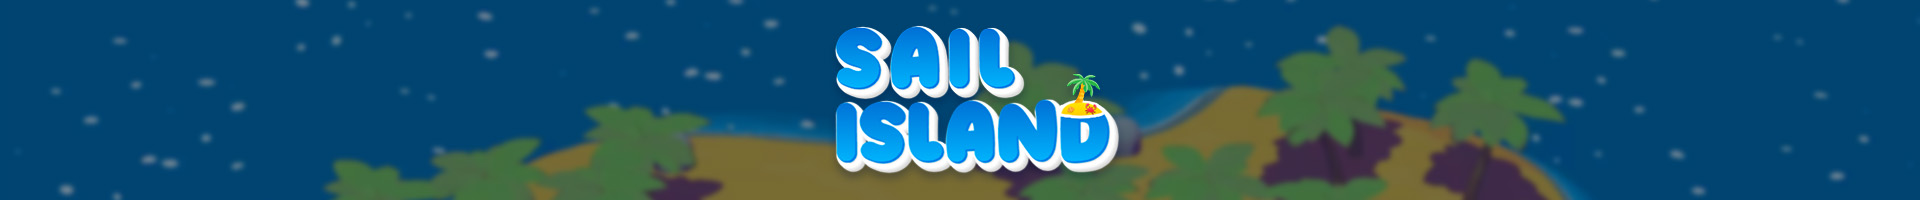 Sail Island